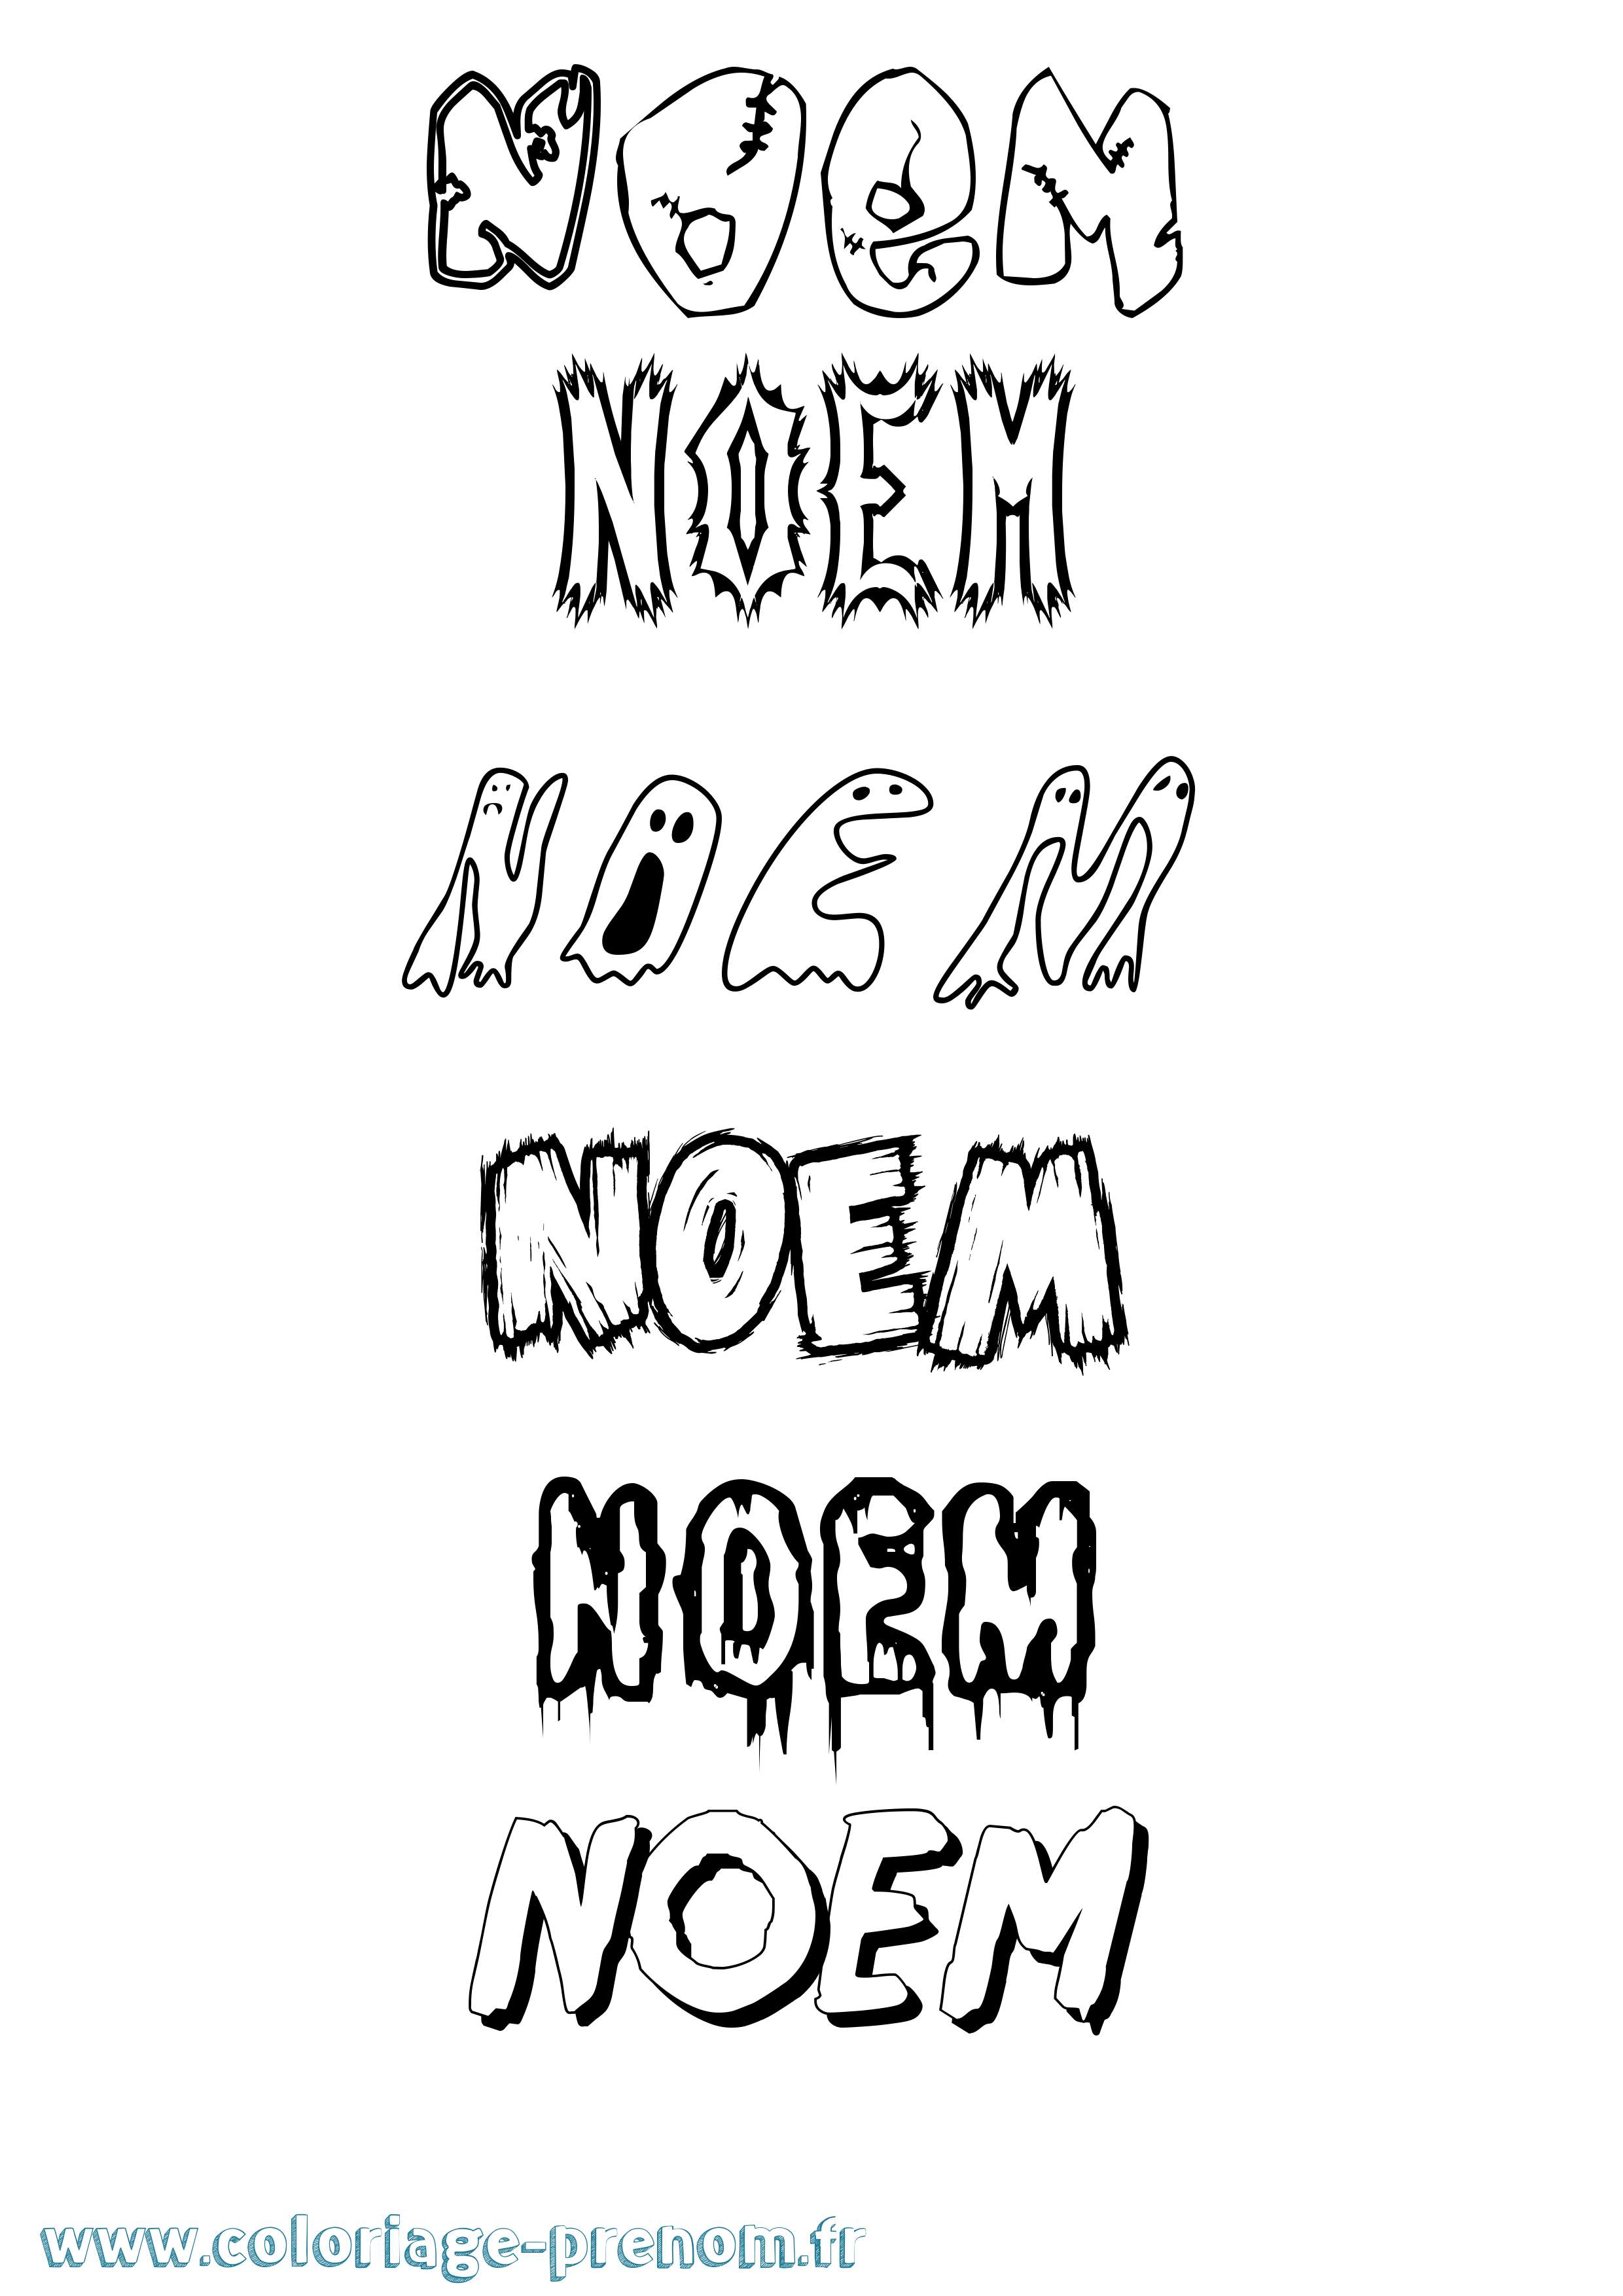 Coloriage prénom Noem Frisson